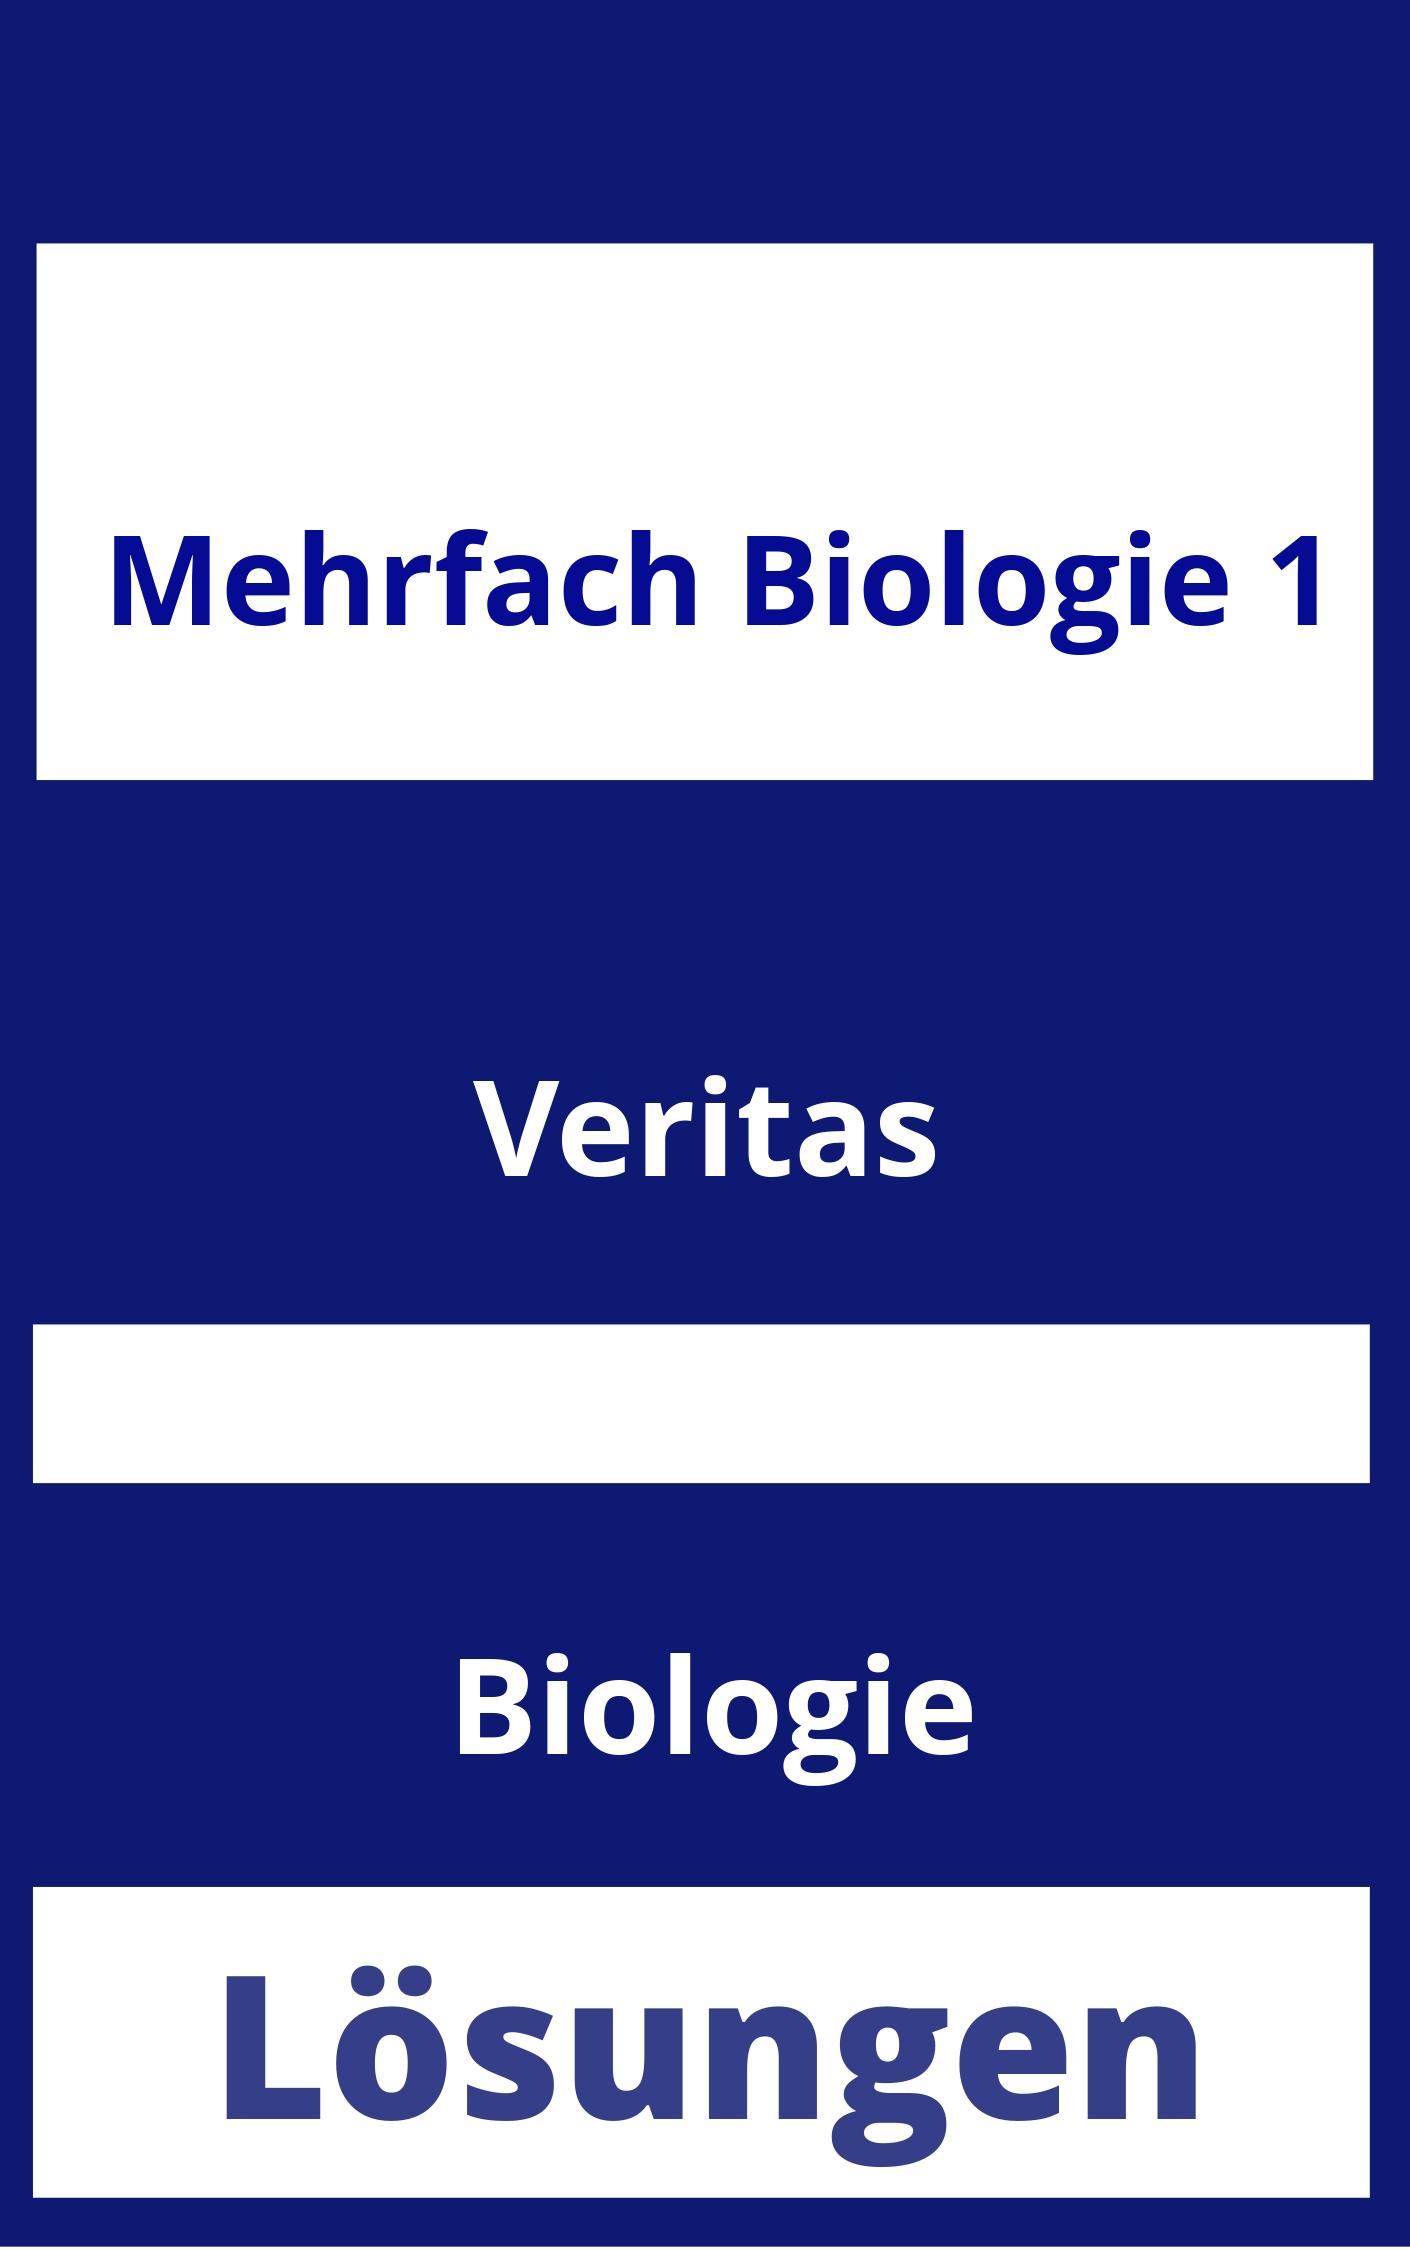 MEHRfach Biologie 1